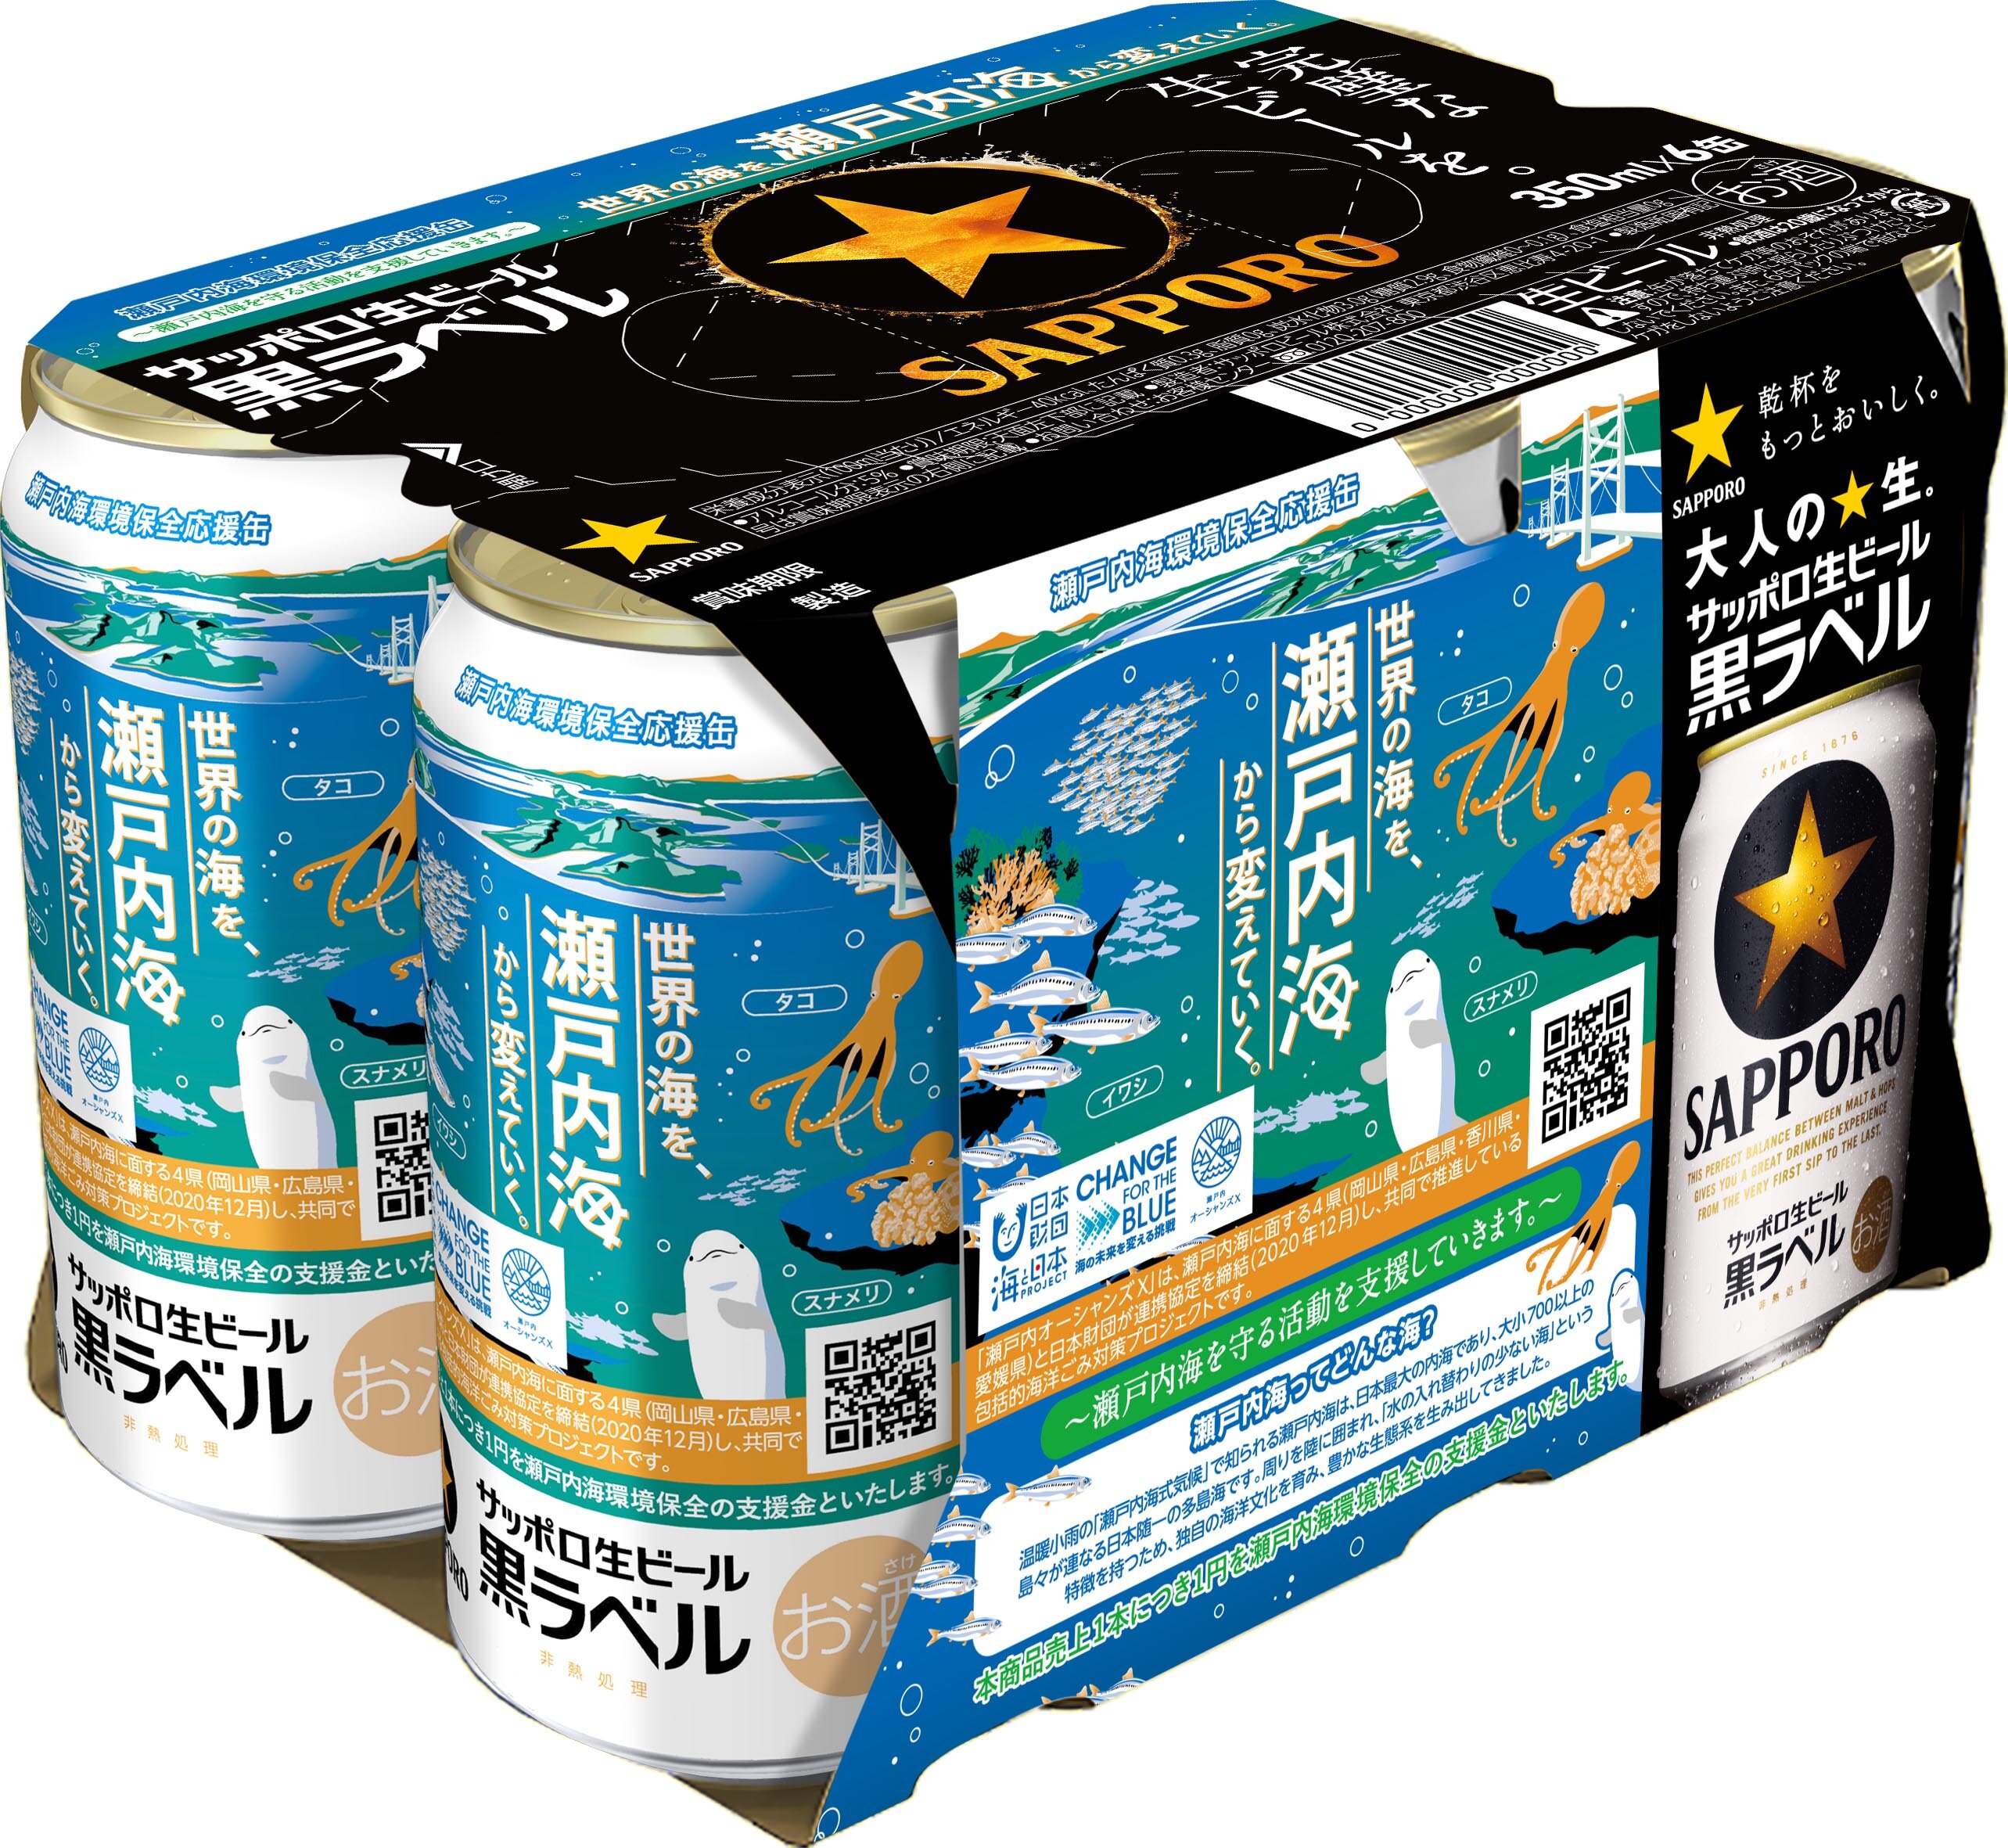 サッポロ生ビール黒ラベル「瀬戸内海環境保全応援缶」数量限定発売